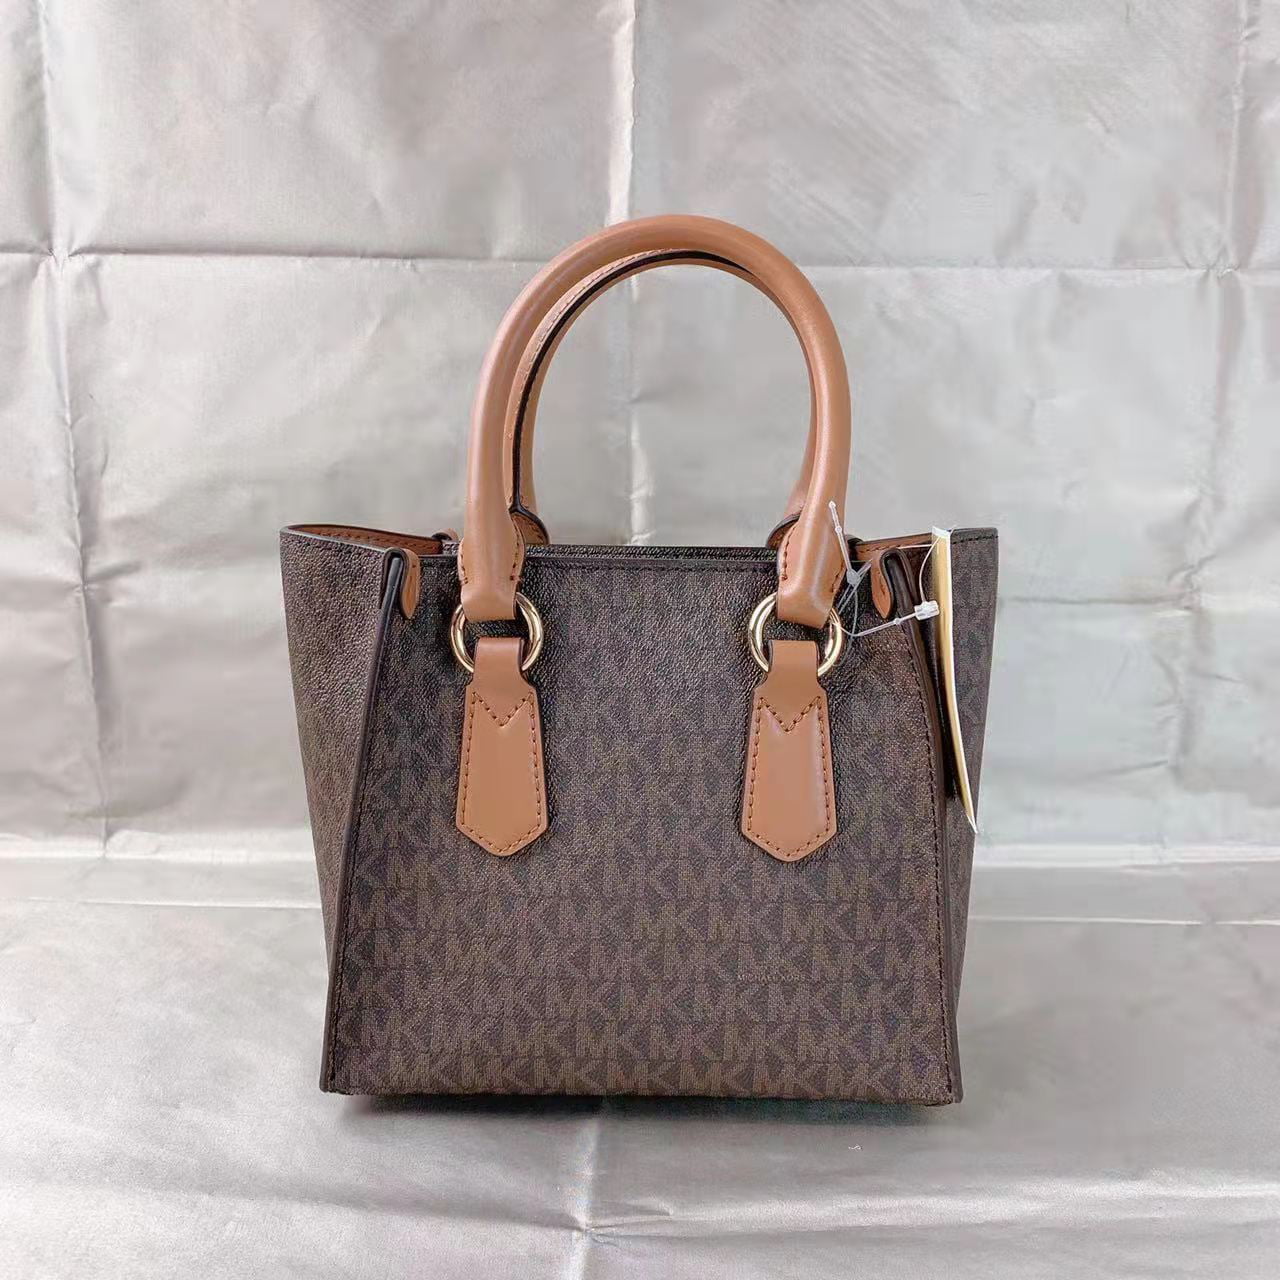 MICHAEL KORS: handbag for woman - Brown  Michael Kors handbag 30F2GAQS2B  online at